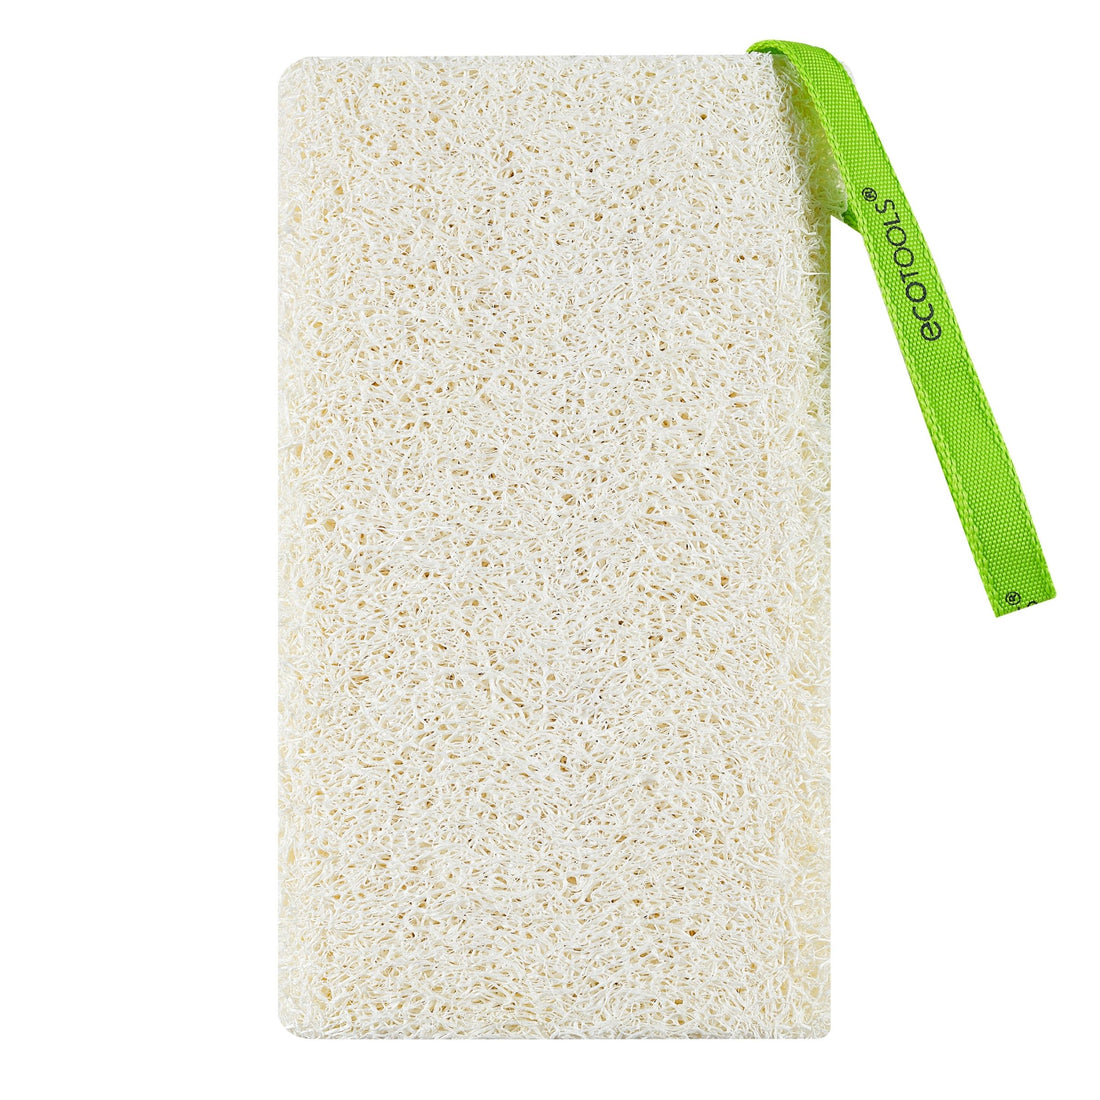 100% Natural Loofah Exfoliating Sponge (3 Pack) - Loofah Body Scrubber - Loofah Sponge - Organic Loofah - Exfoliating Body Sponge - Biodegradable Loof